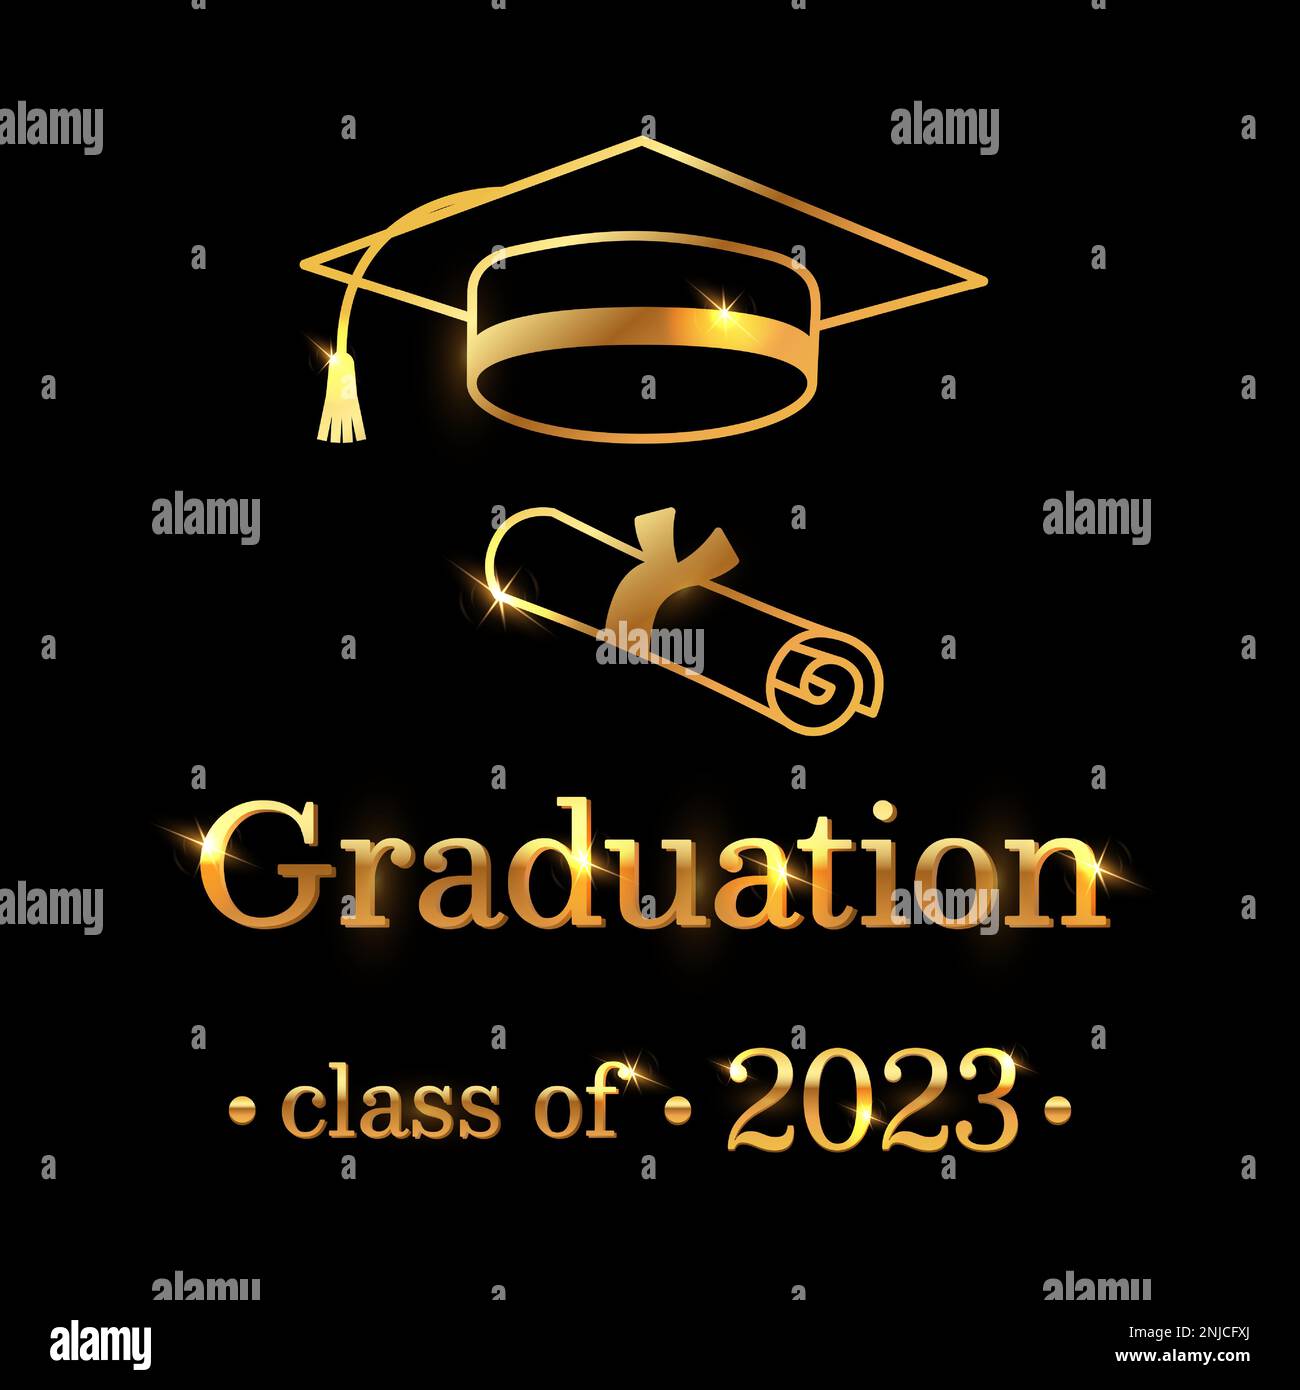 Feiern Sie den Erfolg des Absolventen mit dieser eleganten schwarzen Karte mit goldener Abschlusskappe, Zertifikat und herzlicher Botschaft. Vektorbeleuchtung Stock Vektor